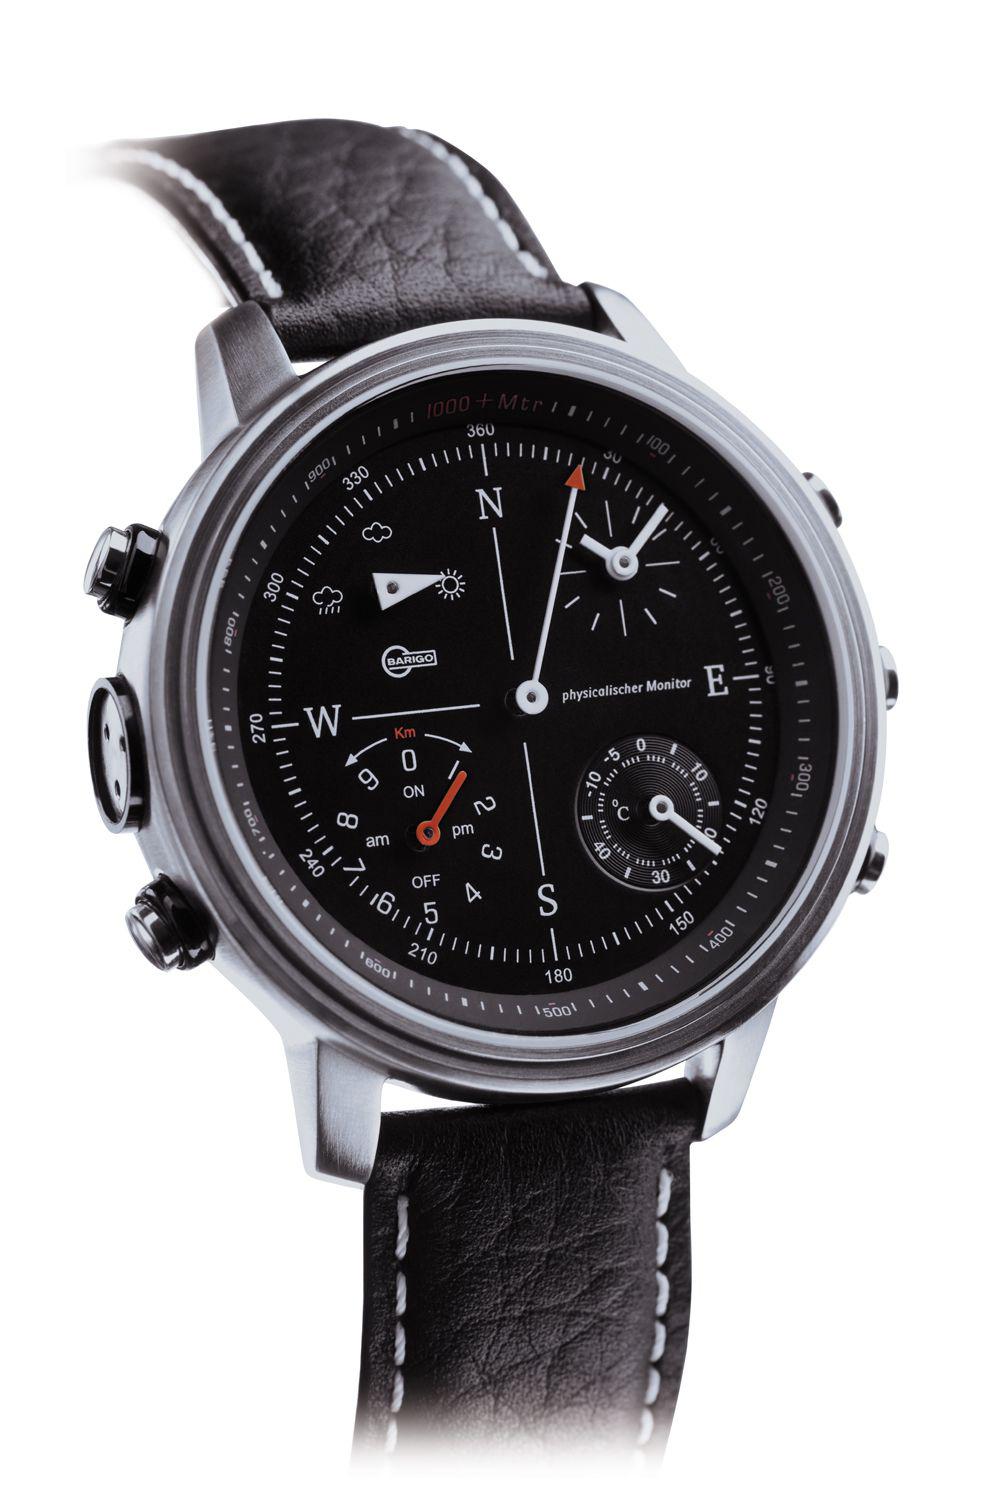 Foto Barigo Reloj multifunción 5 en 1 Reloj de pulsera negro/gris